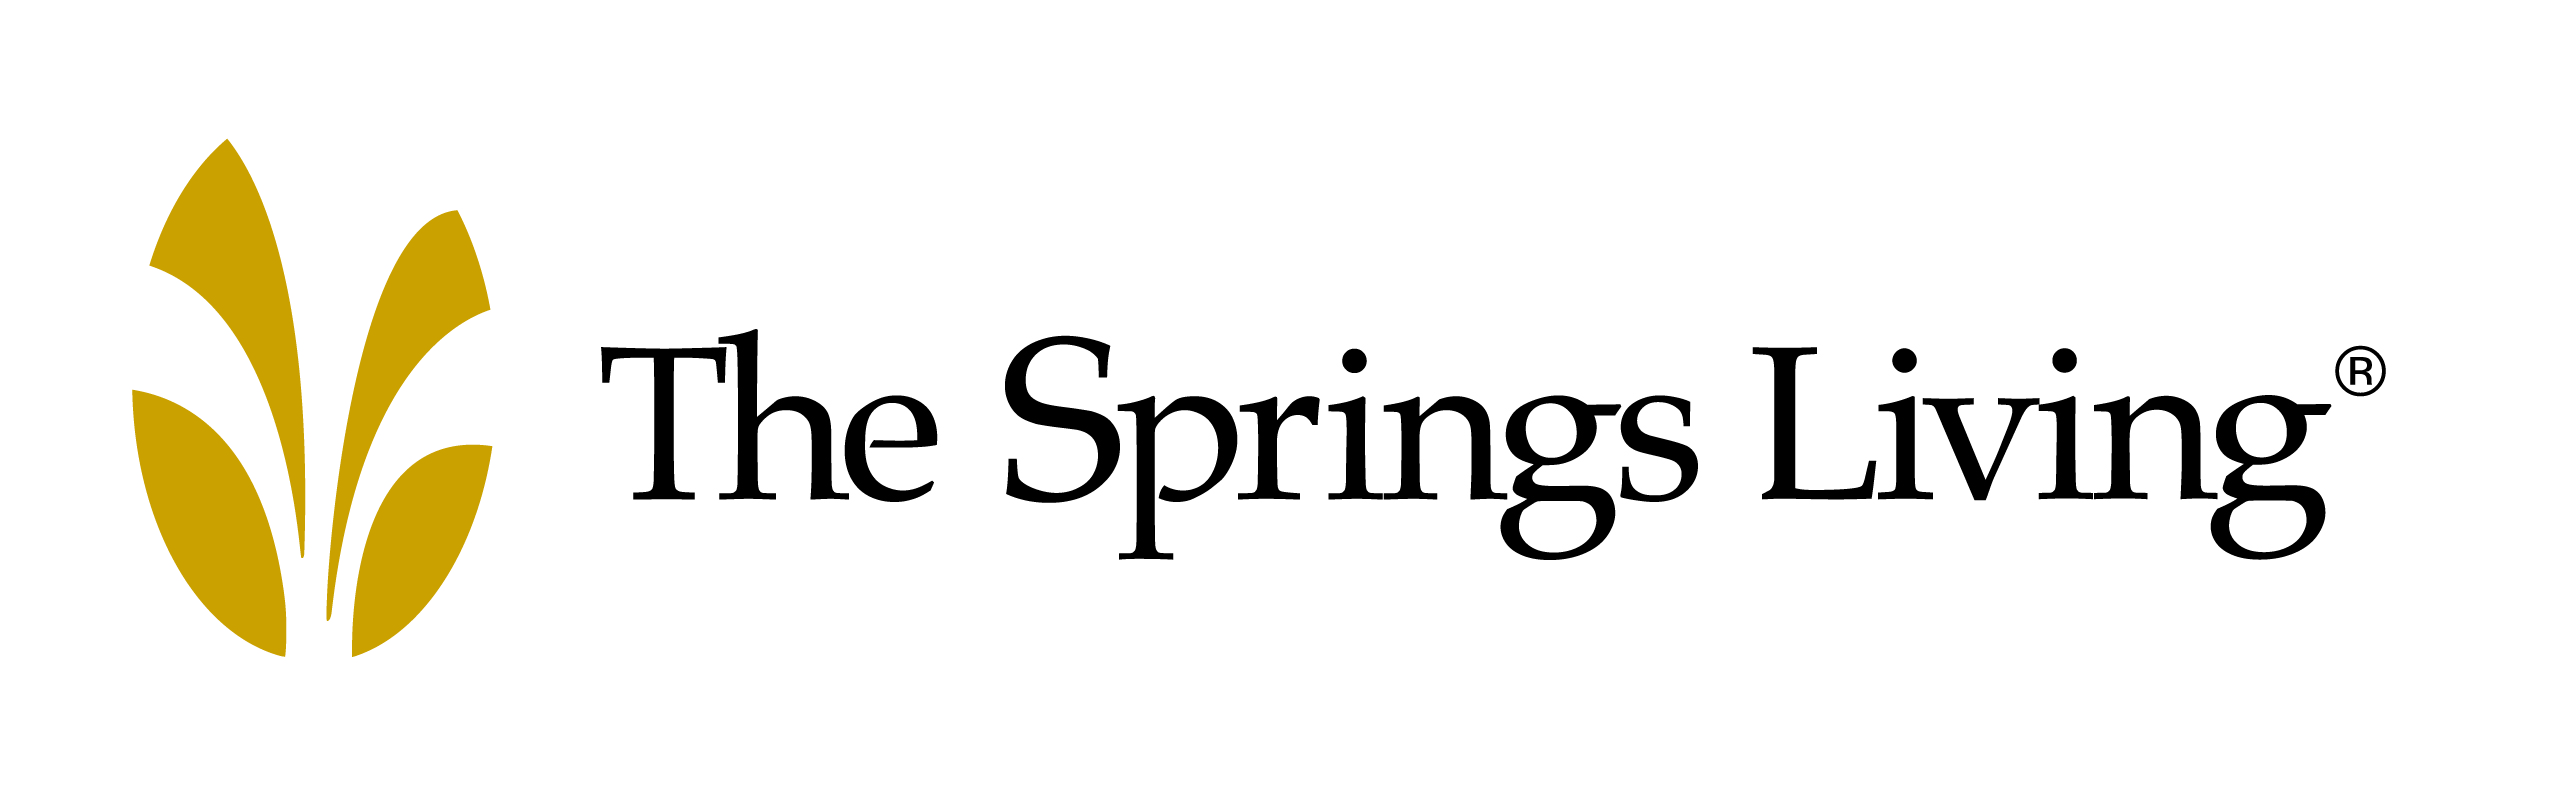 C. The Springs Living (Nivel 2)